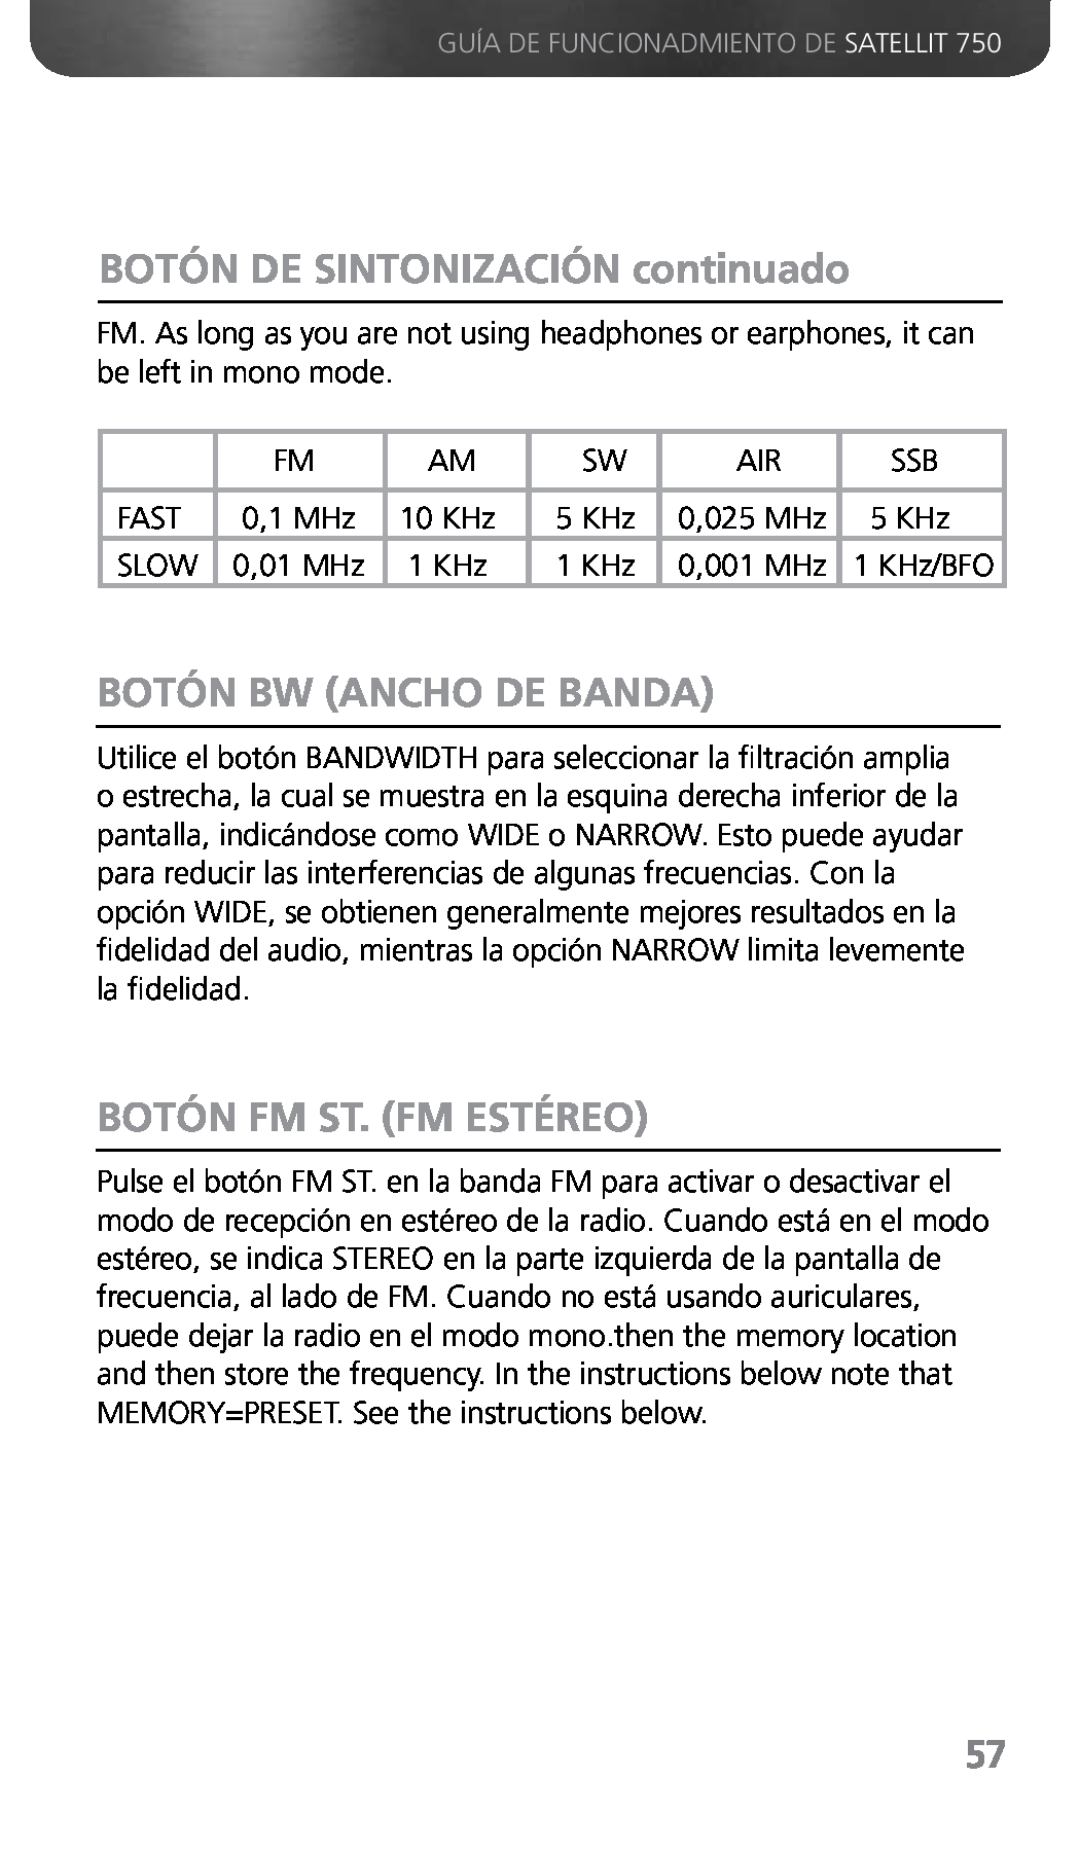 Grundig 750 owner manual BOTÓN DE SINTONIZACIÓN continuado, Botón Bw Ancho De Banda, Botón Fm St. Fm Estéreo 